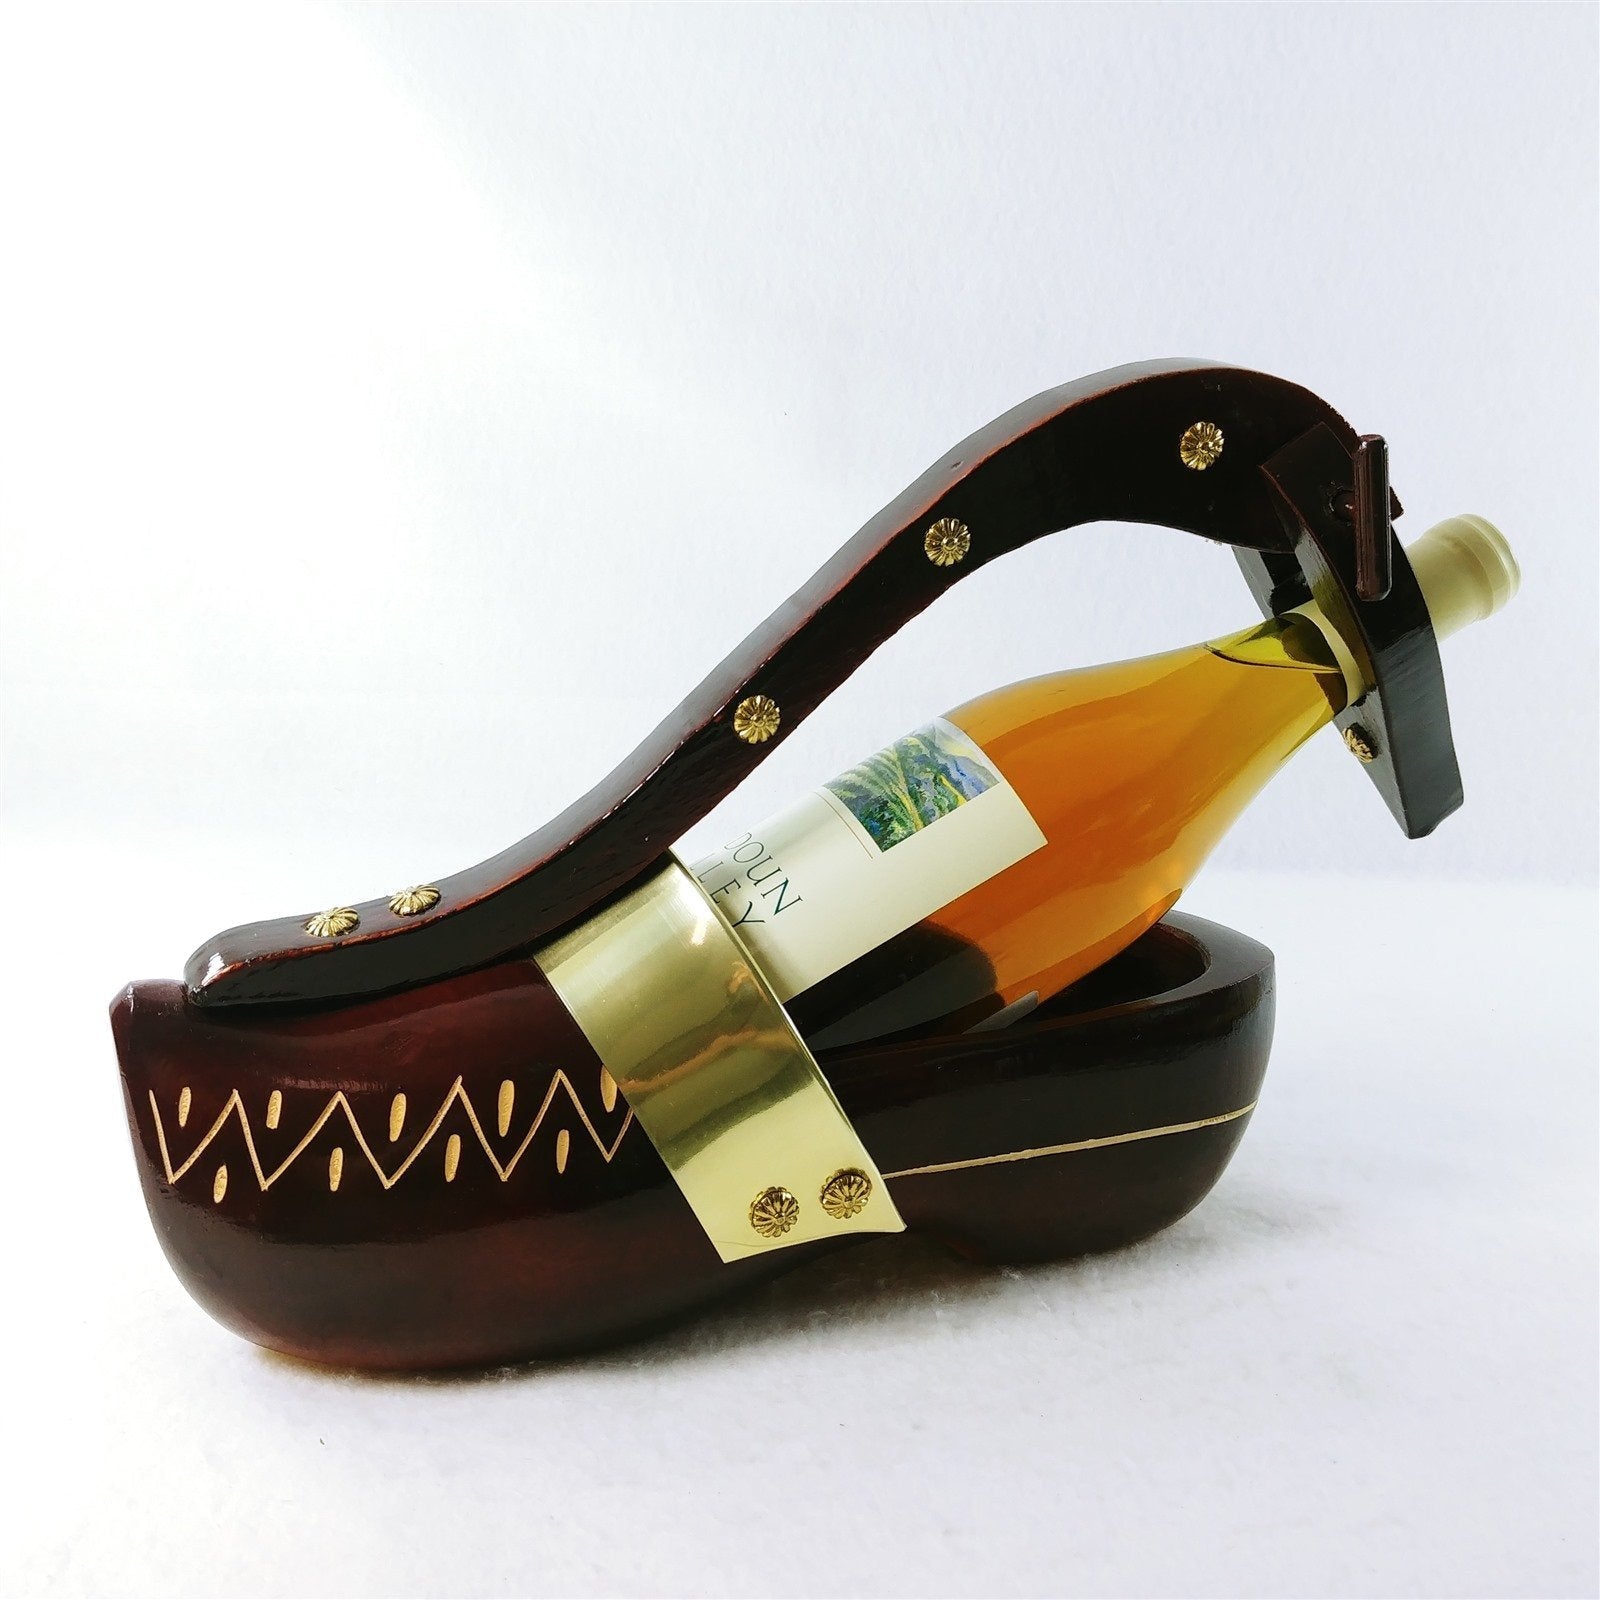 Wine Bottle Holder Hand Carved Wooden Shoe Rivet Accents